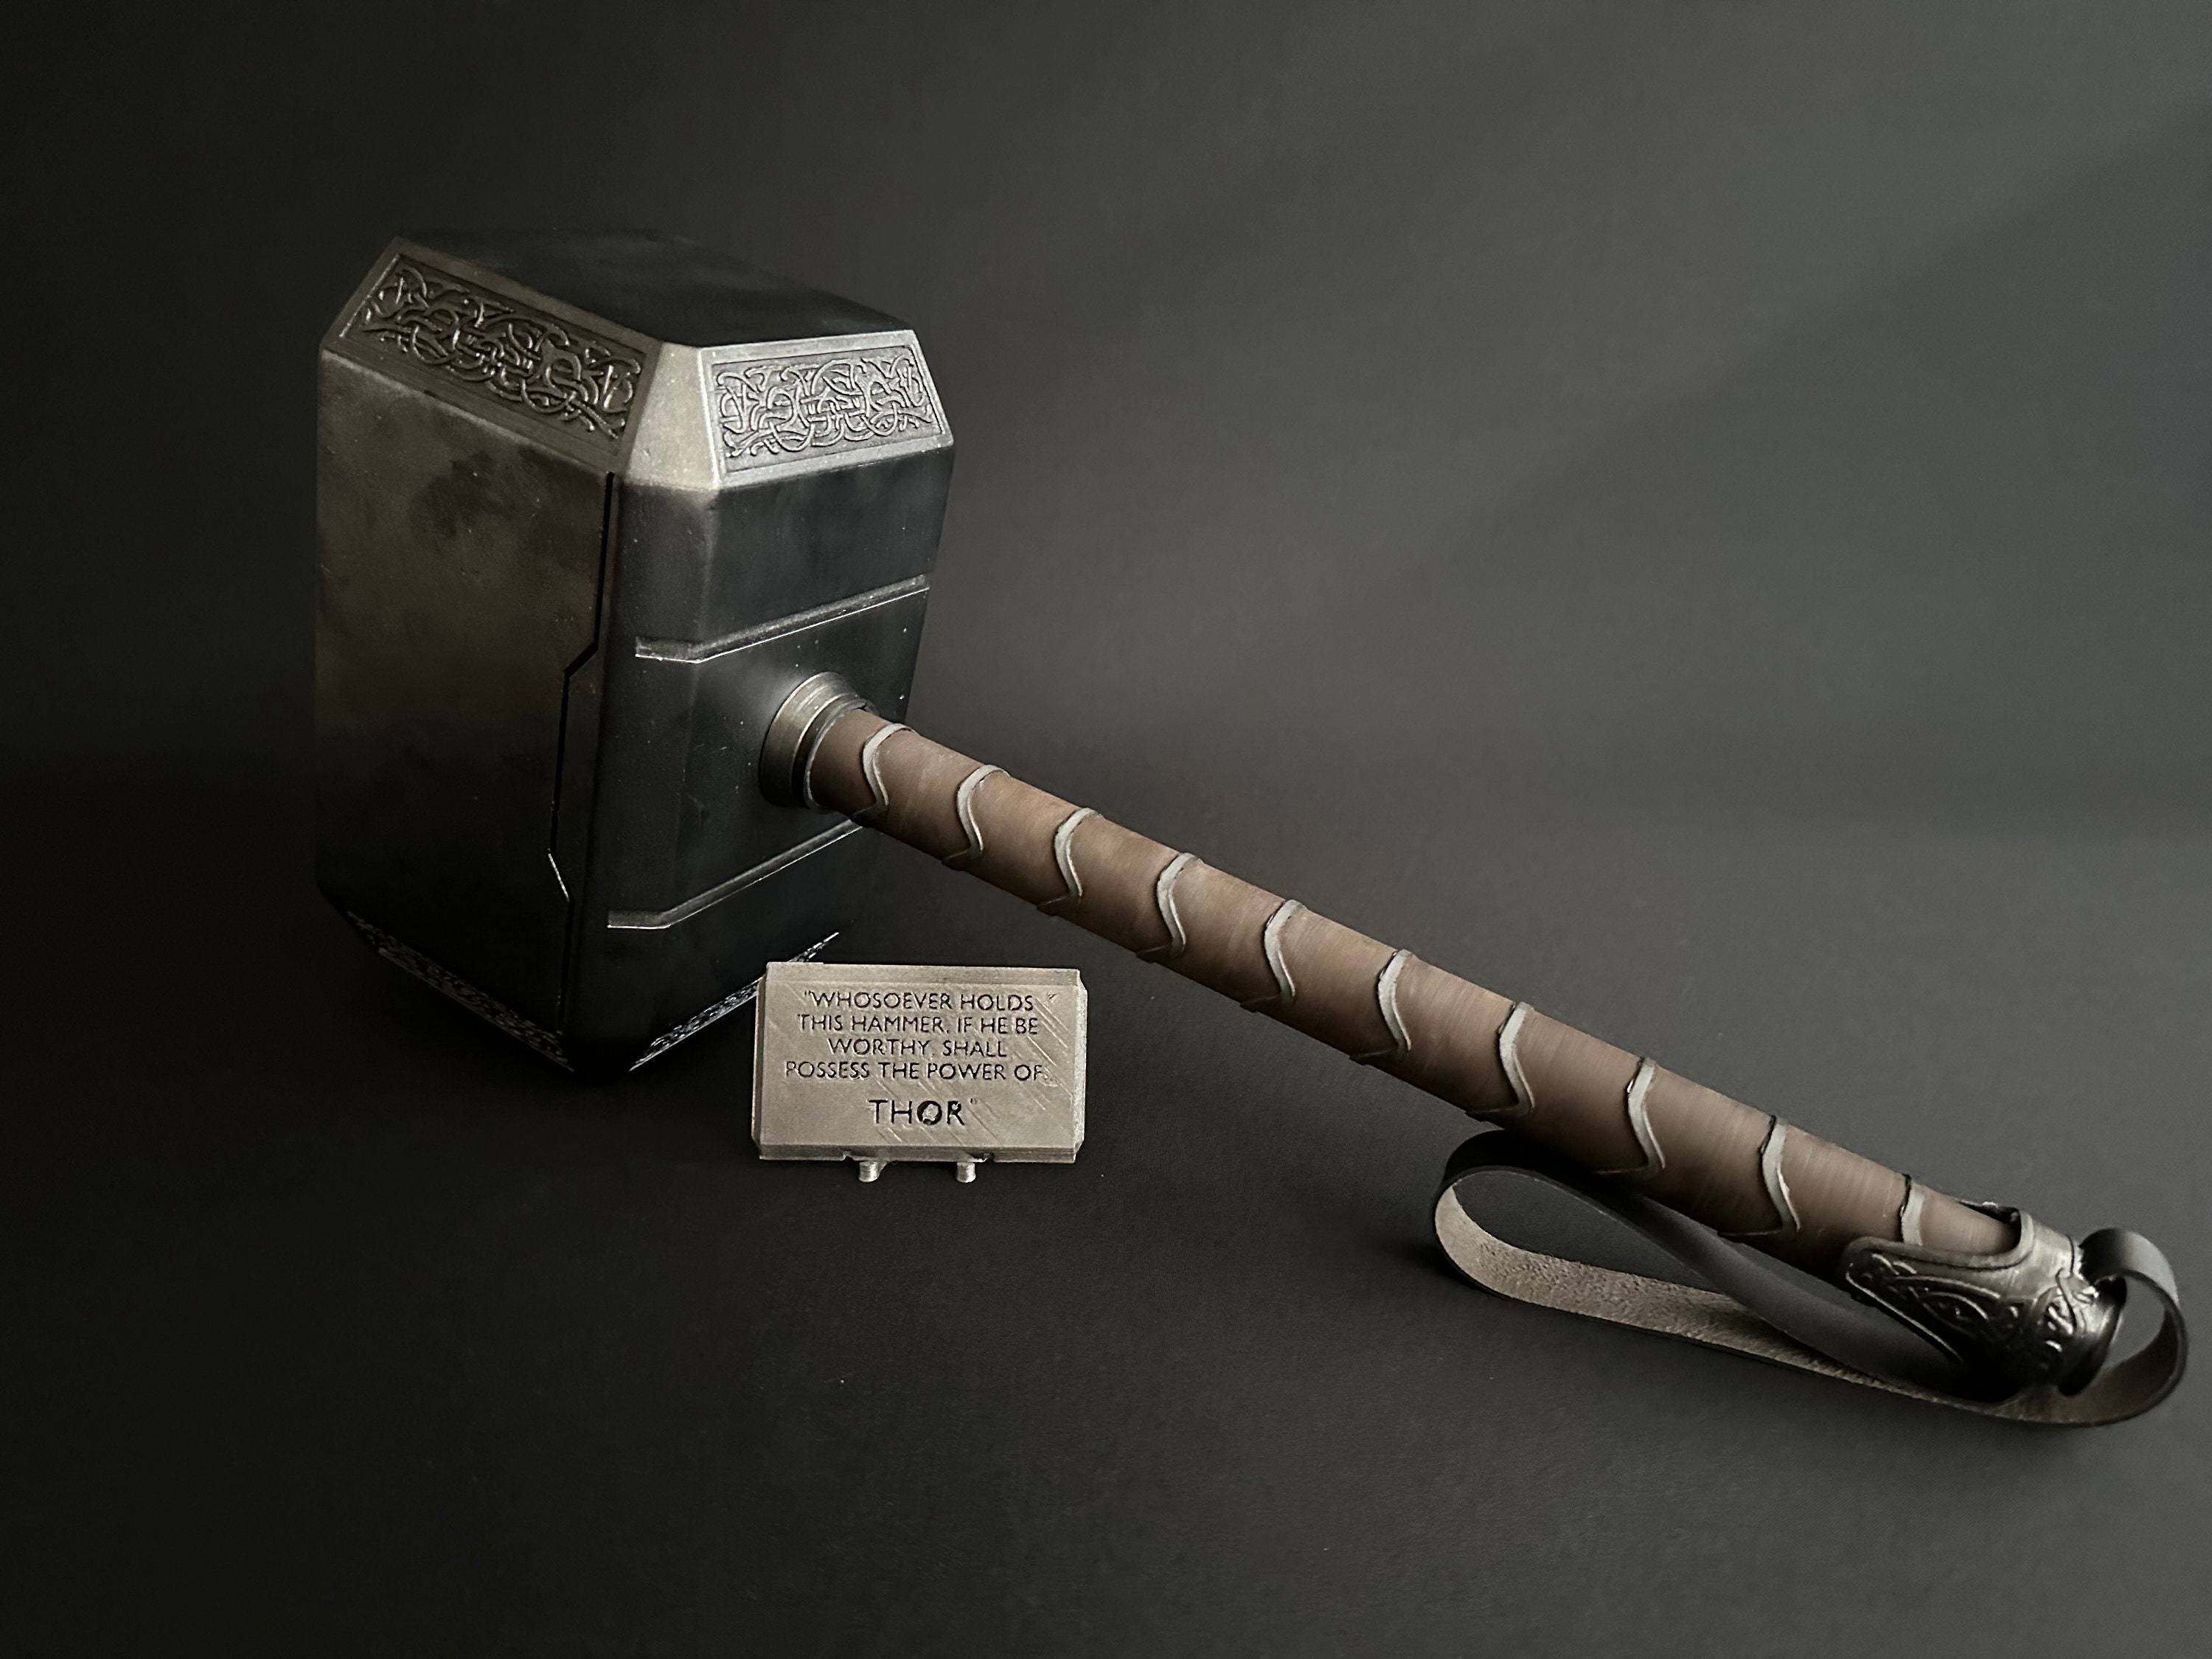 Cómo se llama el martillo de Thor?